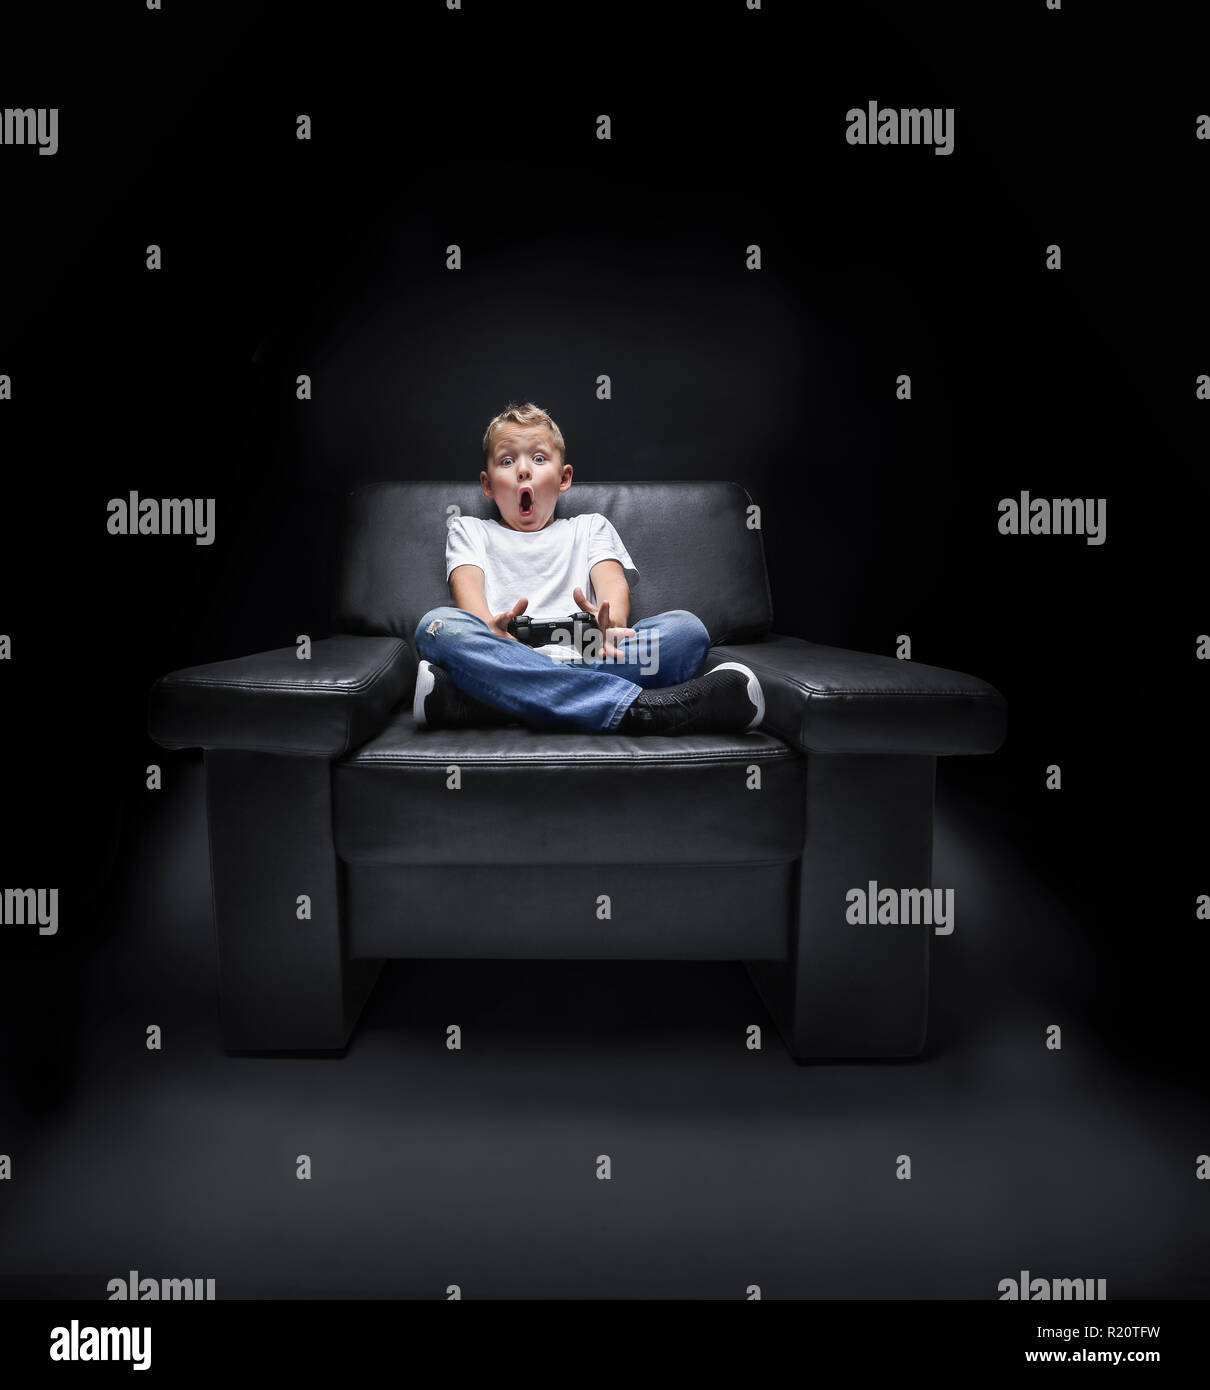 Jeune garçon en fauteuil à regarder la télévision et hurle avec le contrôleur dans sa main en face de fond noir Banque D'Images